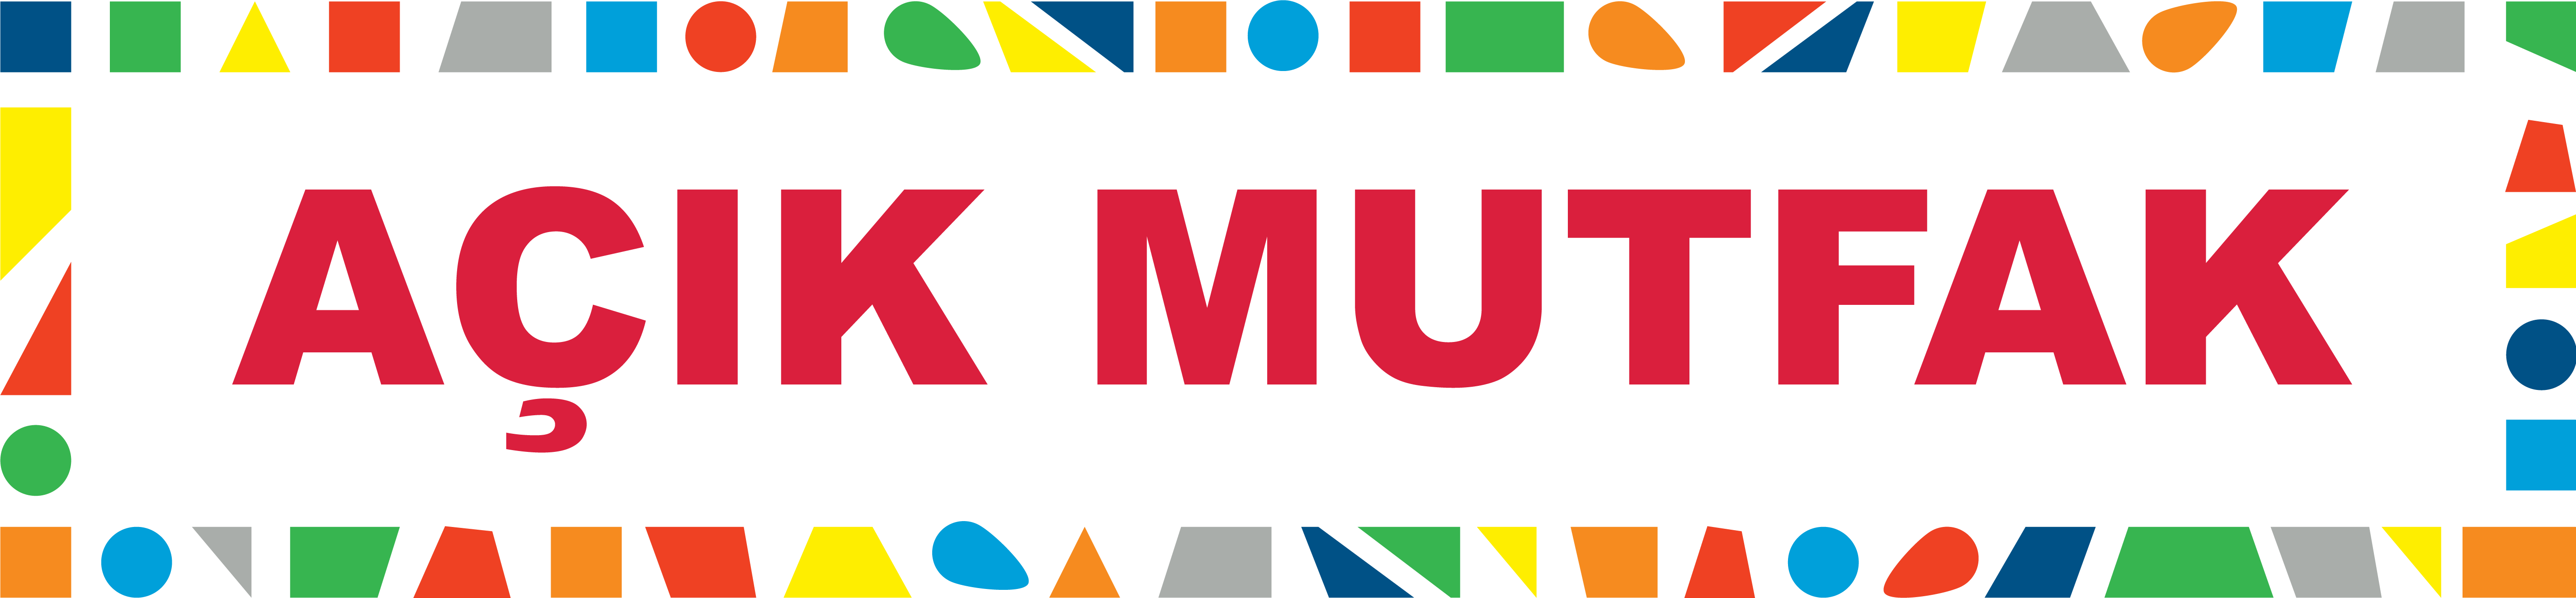 acik-mutfak-logo